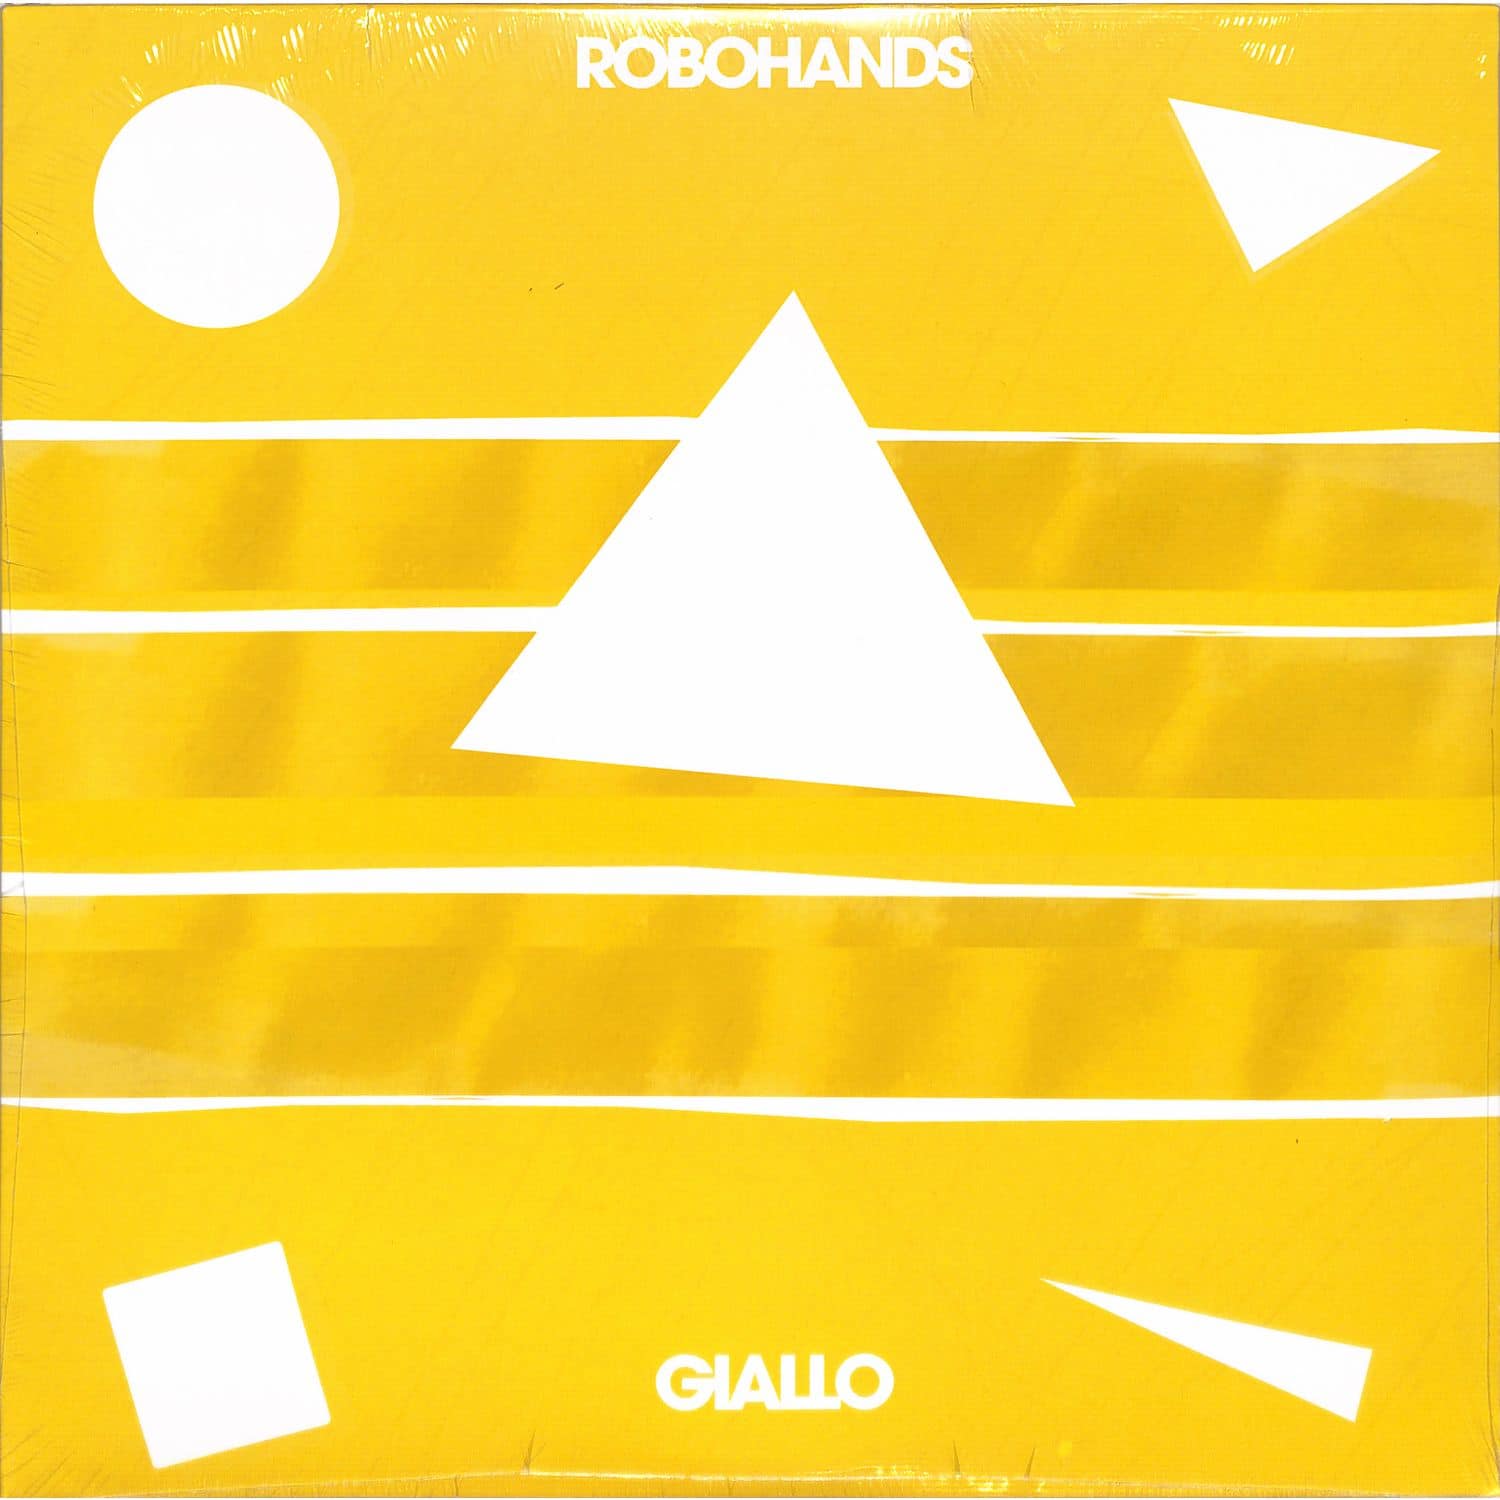 Robohands - GIALLO